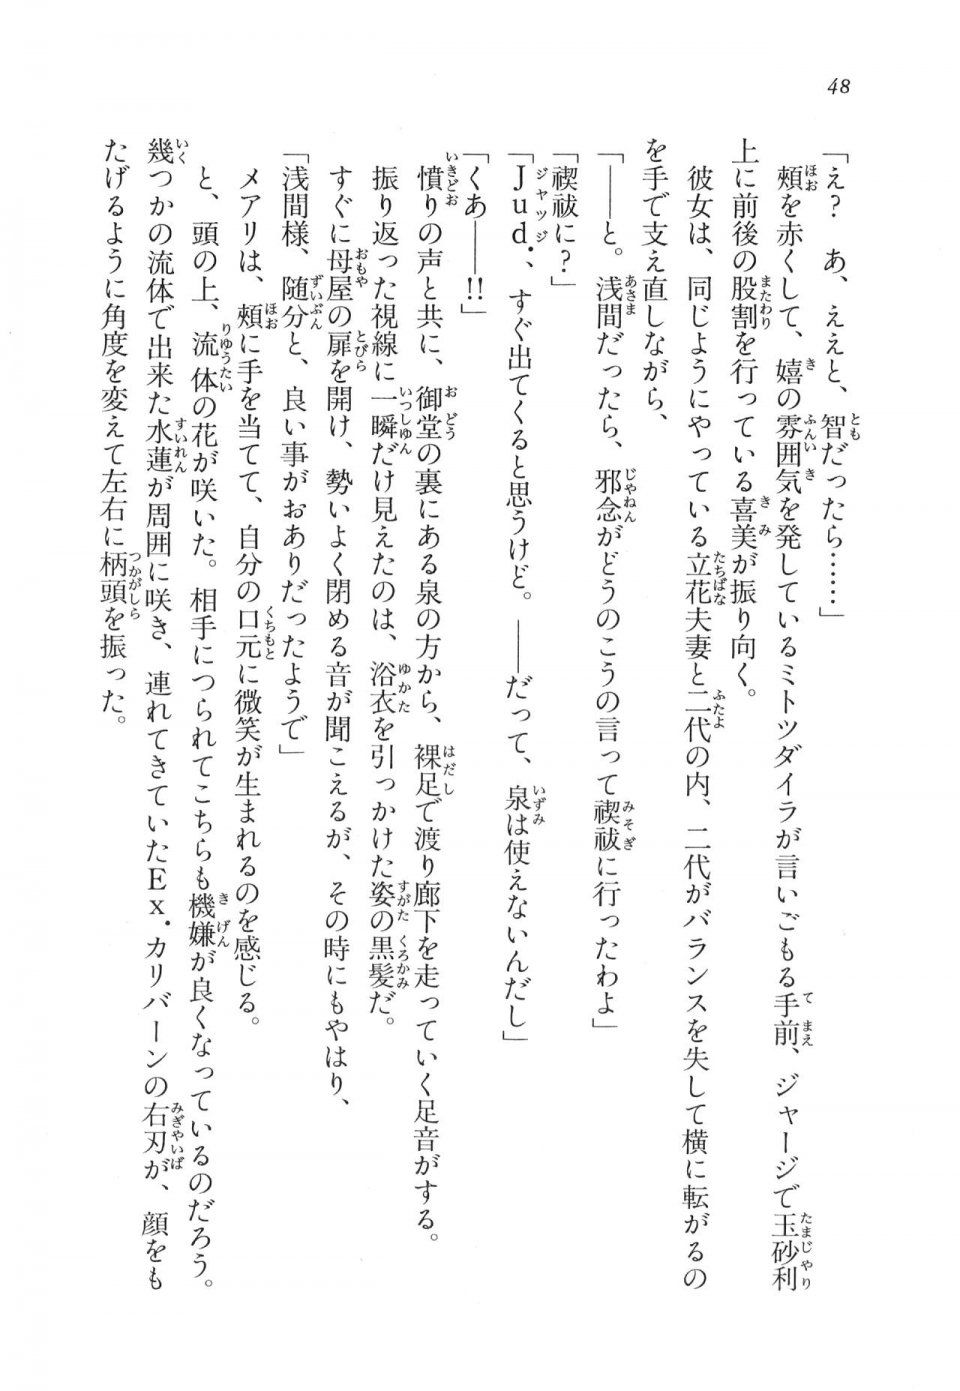 Kyoukai Senjou no Horizon LN Vol 11(5A) - Photo #49